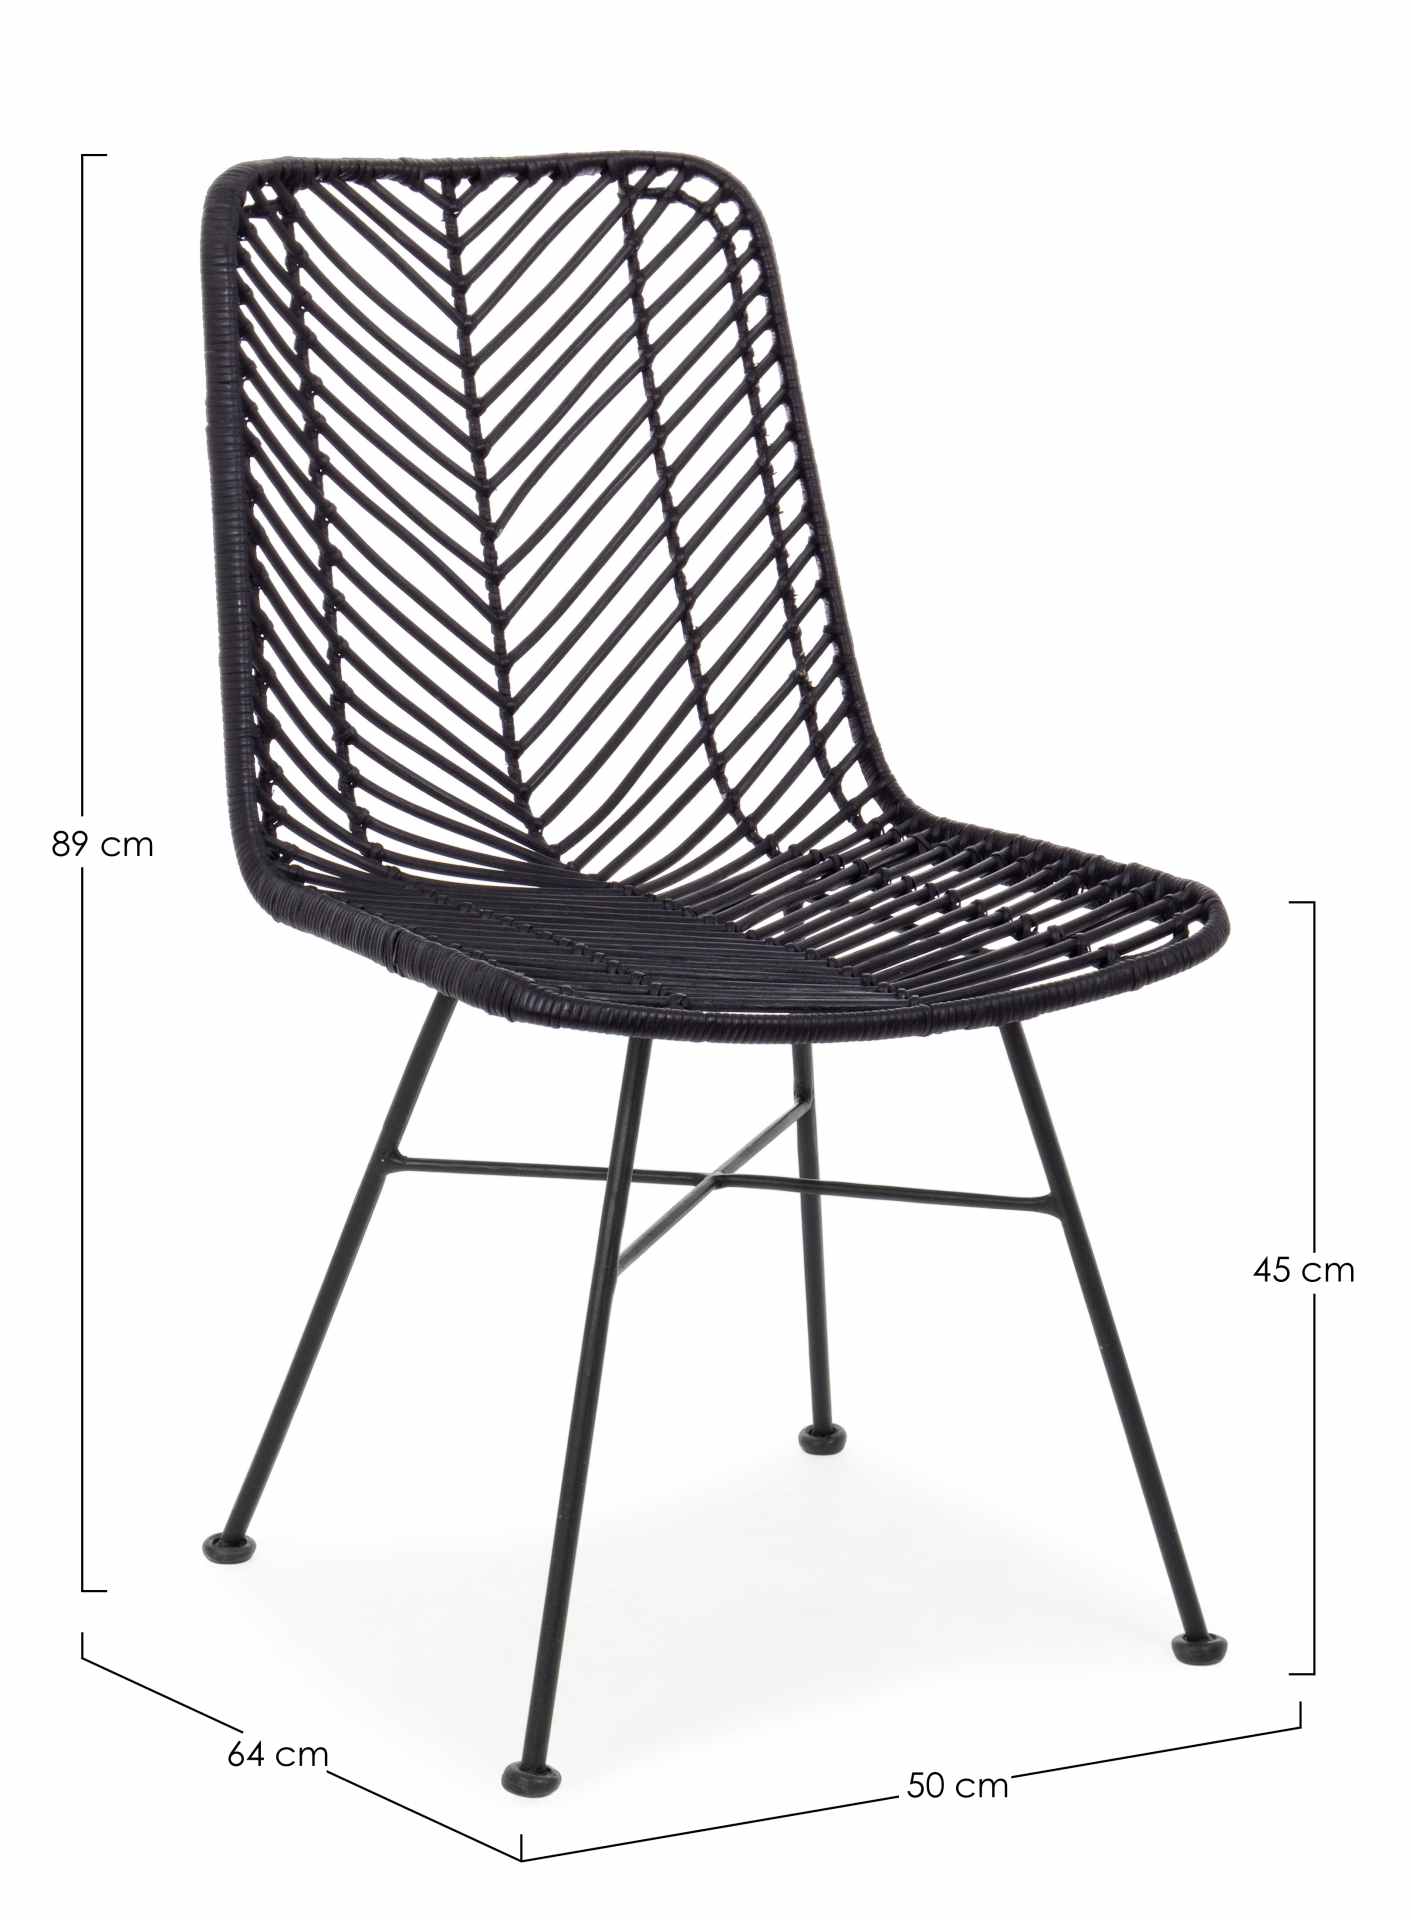 Der Stuhl Lorena überzeugt mit seinem modernem aber auch besonderem Design. Gefertigt wurde der Stuhl aus Rattan, welcher einen schwarzen Farbton besitzt. Das Gestell ist aus Metall und ist Schwarz. Die Sitzhöhe beträgt 45 cm.